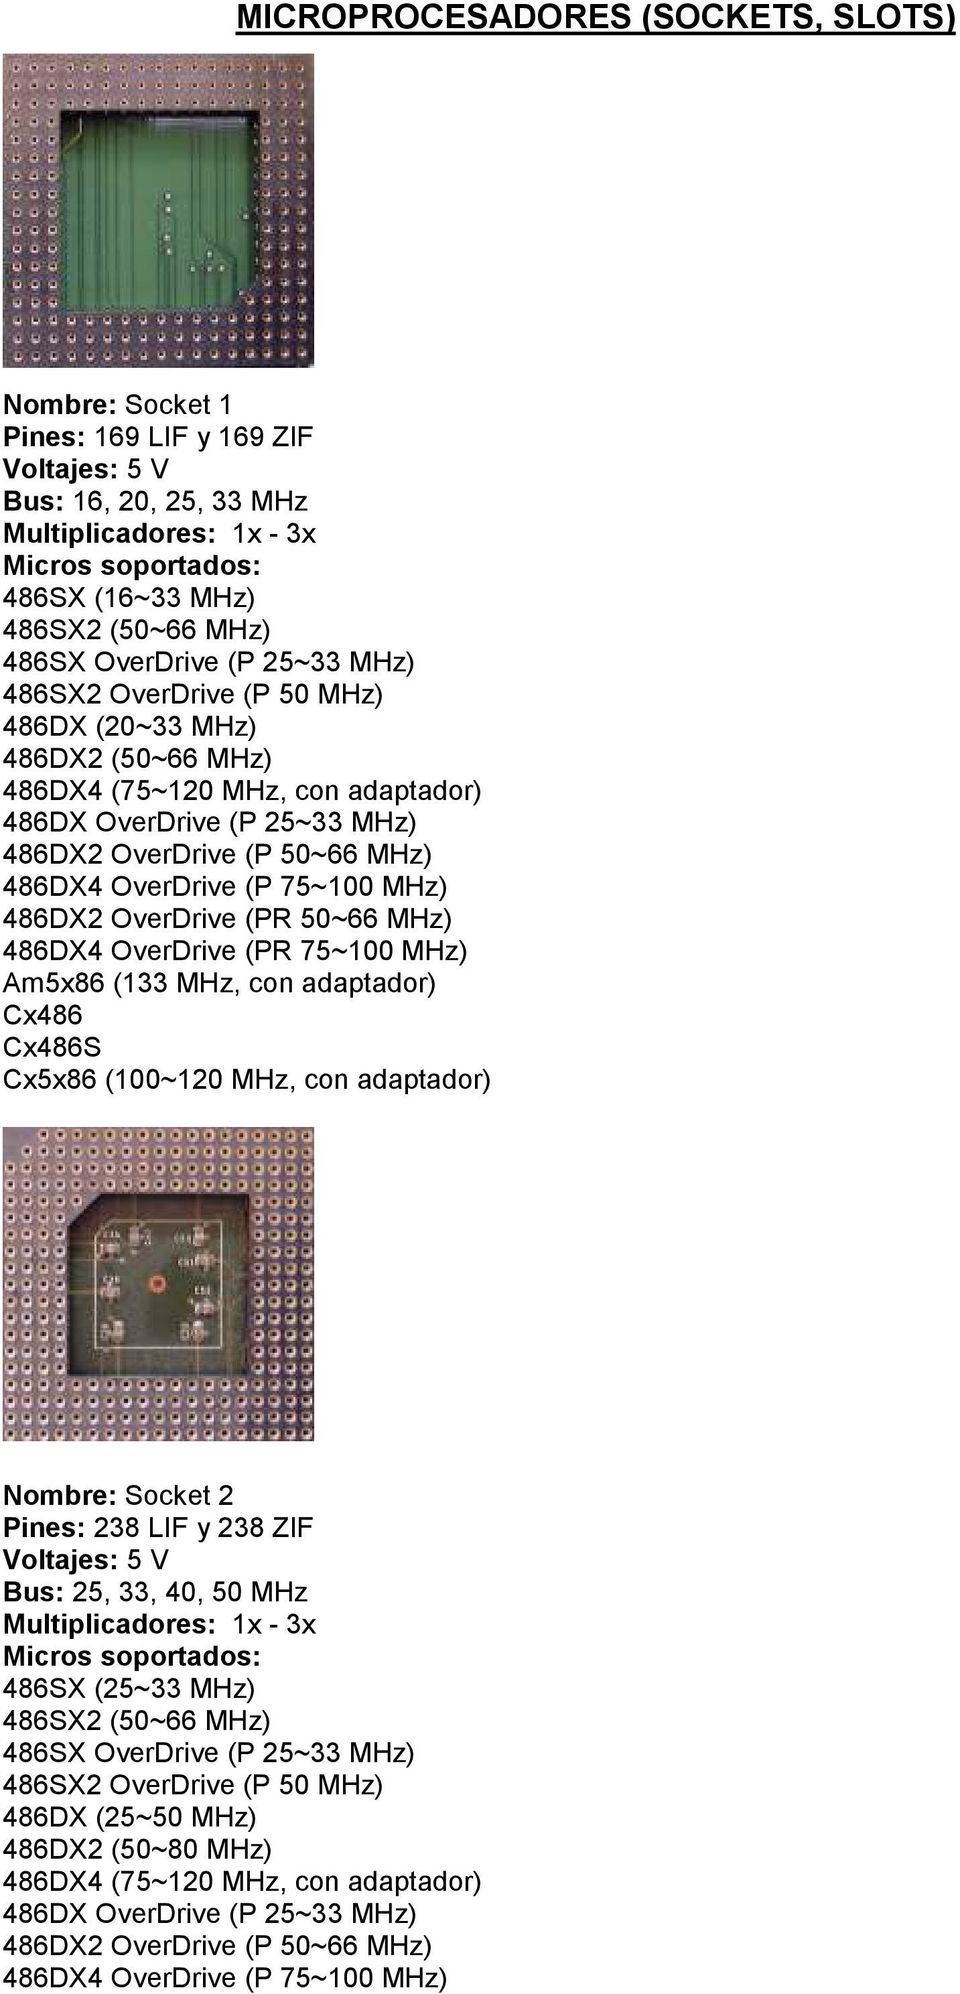 MHz) 486DX2 OverDrive (PR 50~66 MHz) 486DX4 OverDrive (PR 75~100 MHz) Am5x86 (133 MHz, con adaptador) Cx486 Cx486S Cx5x86 (100~120 MHz, con adaptador) Nombre: Socket 2 Pines: 238 LIF y 238 ZIF